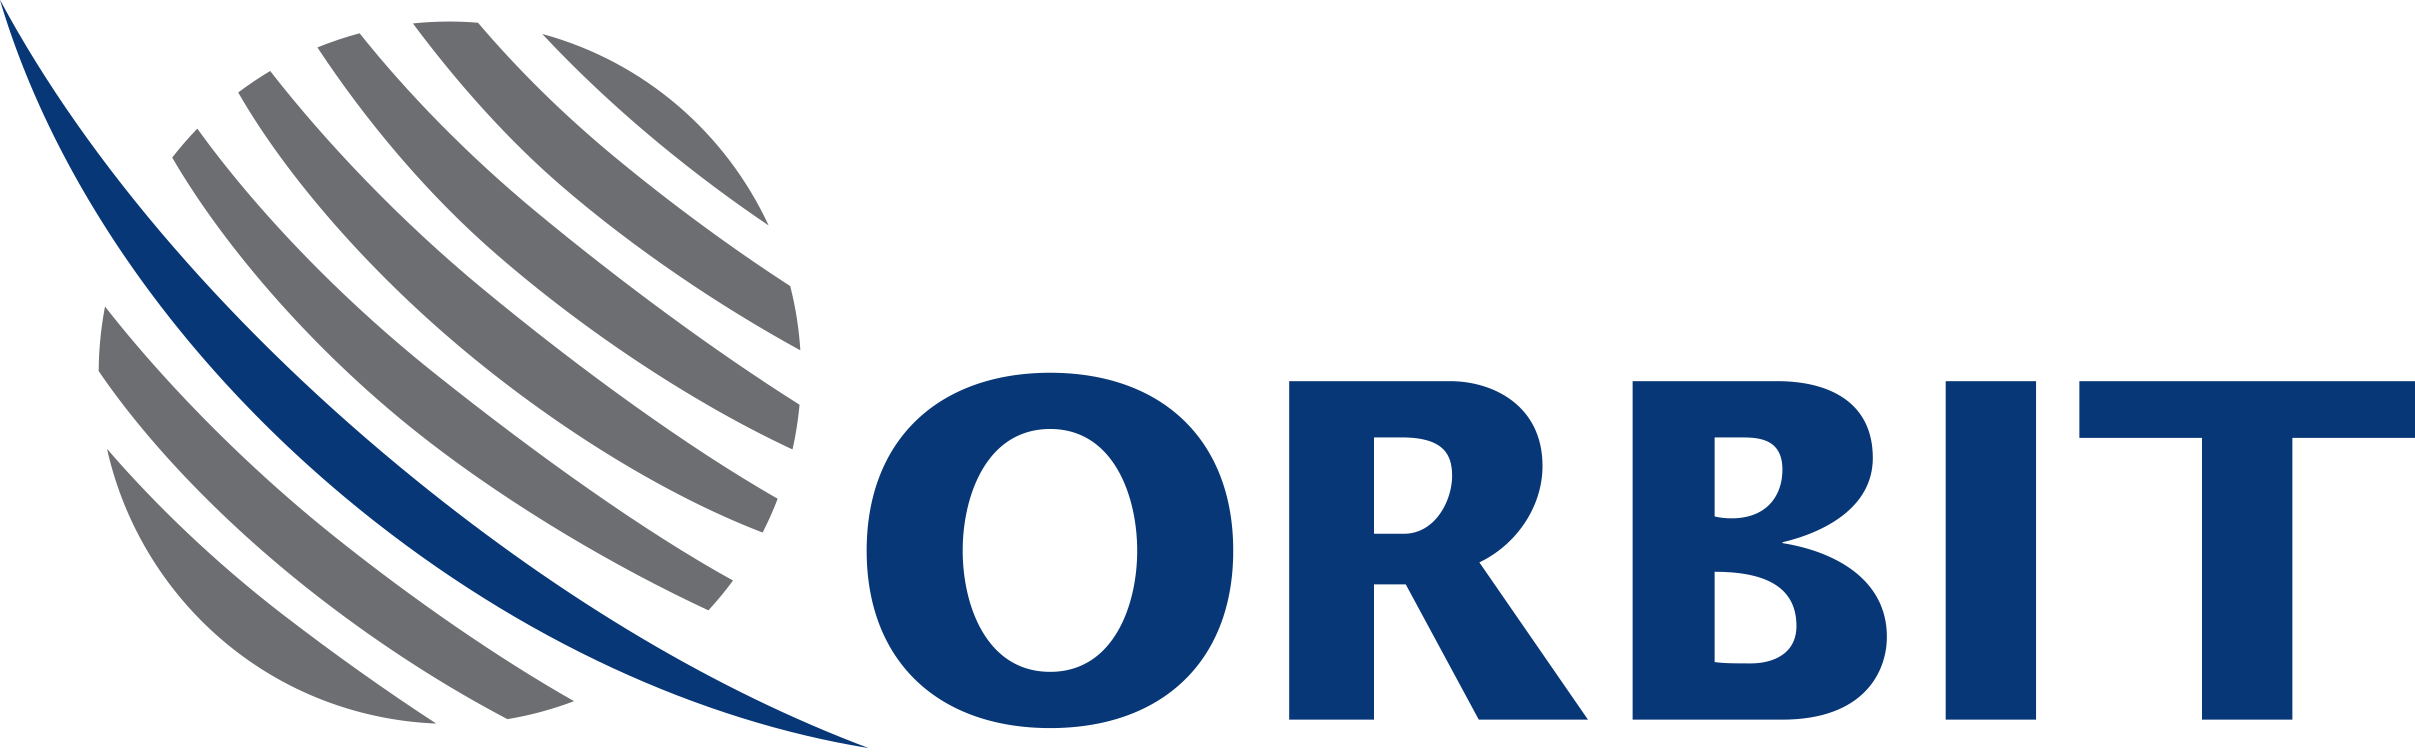 Orbit logo color - Copy